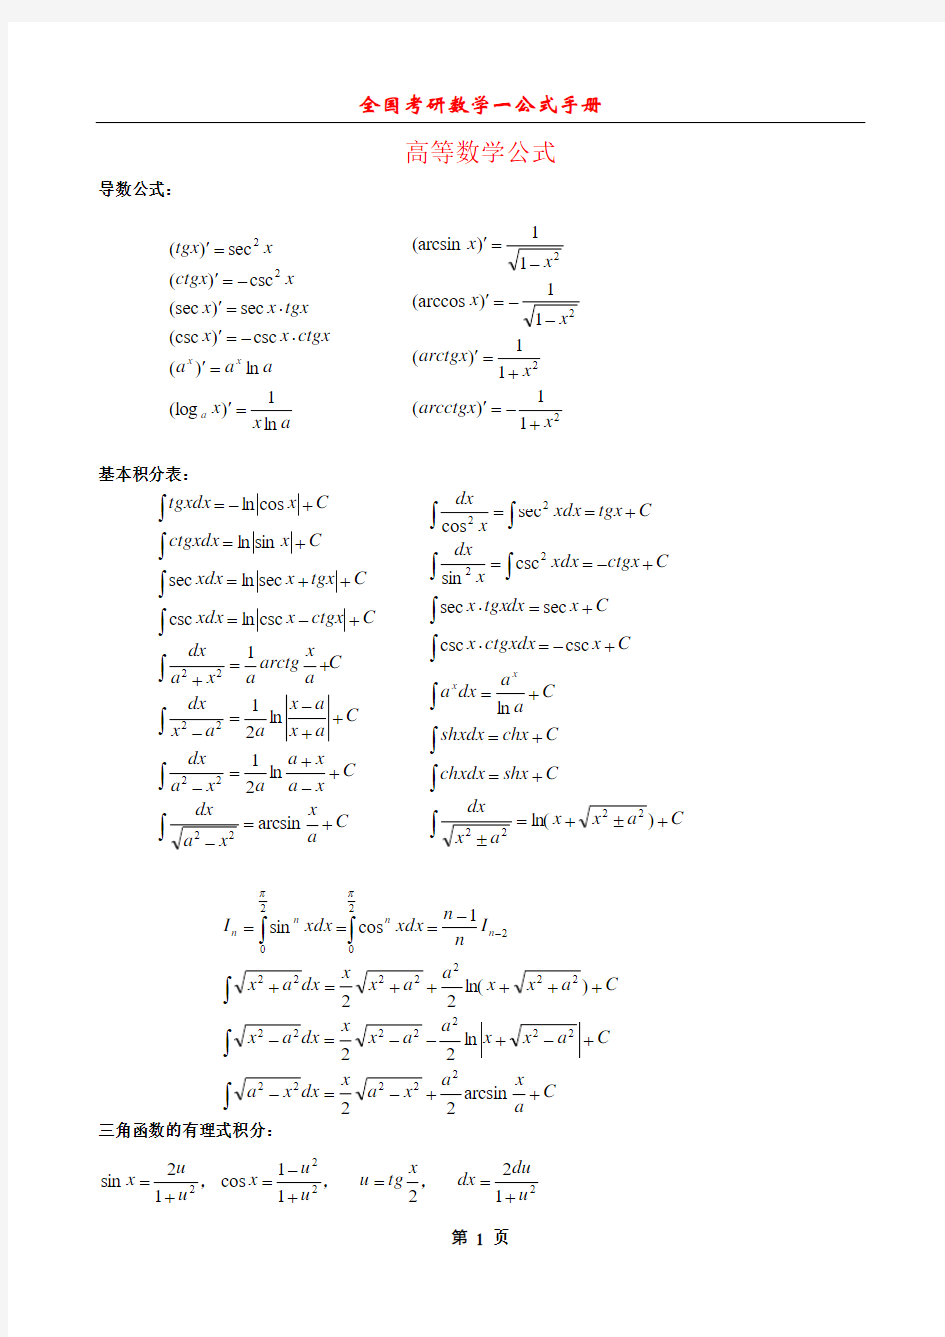 考研数学一公式手册大全(最新整理全面)